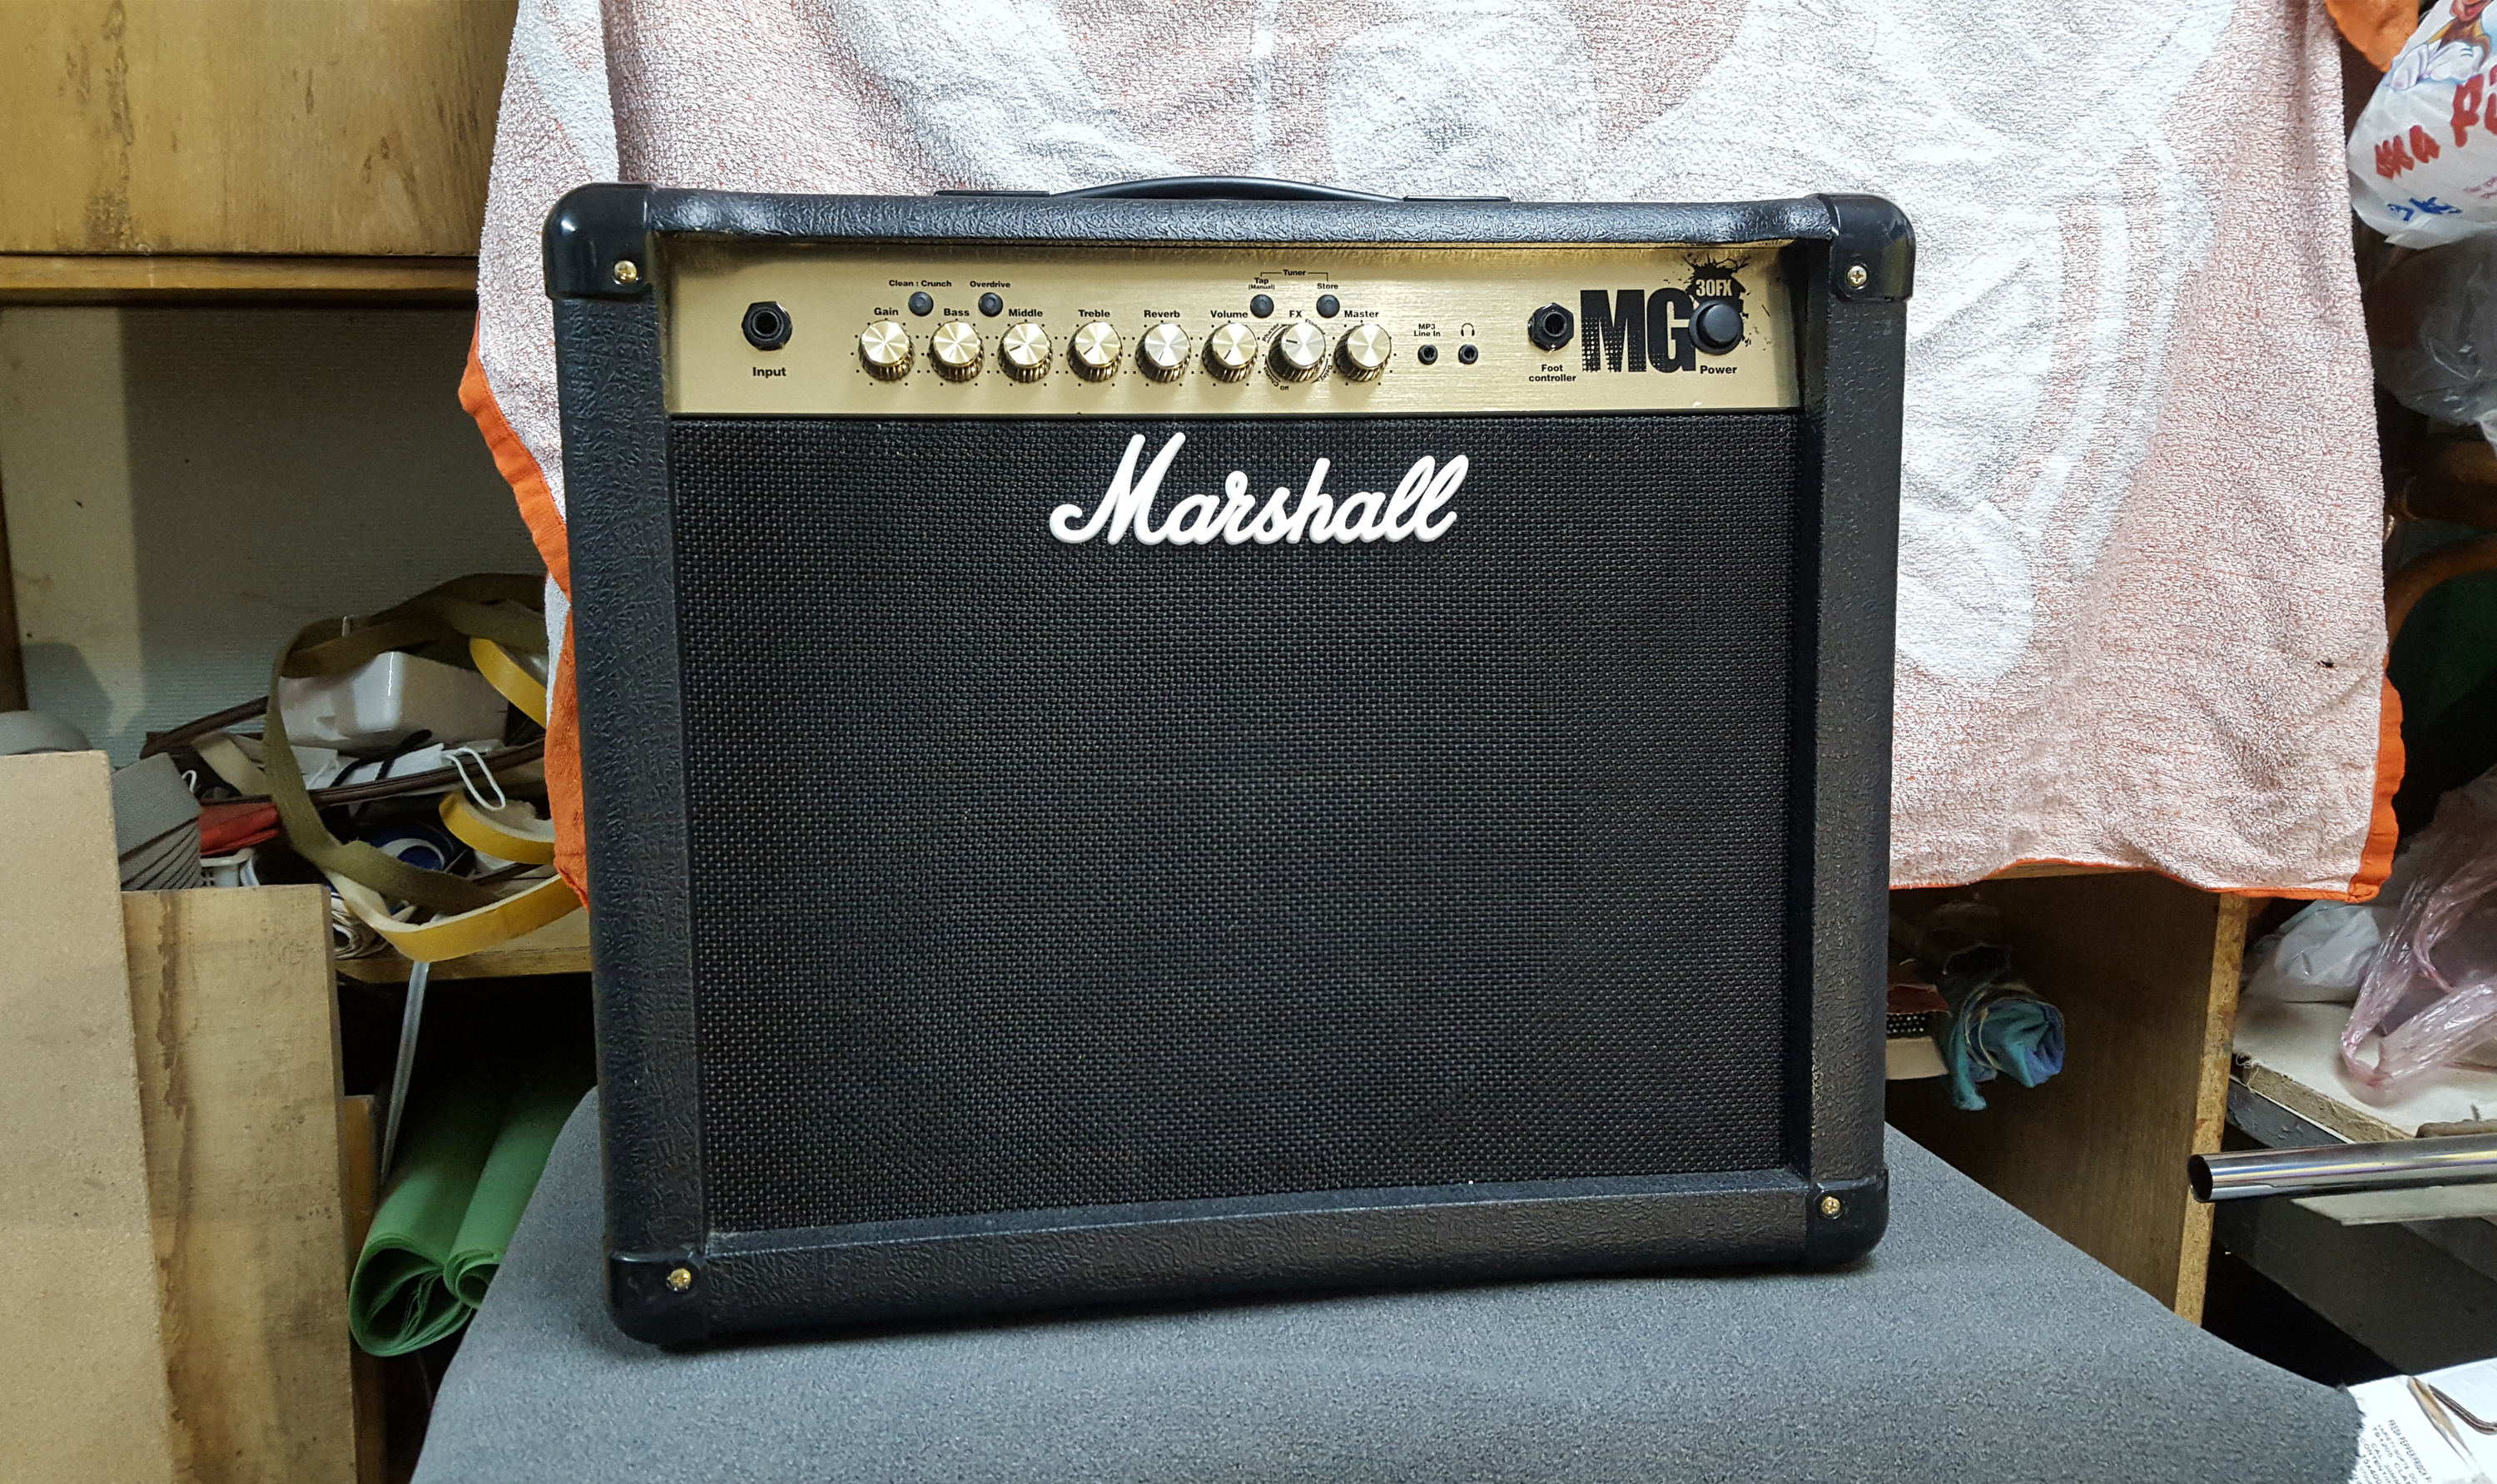 Гитарный комбик Marshall MG 30 FX.с Швеции